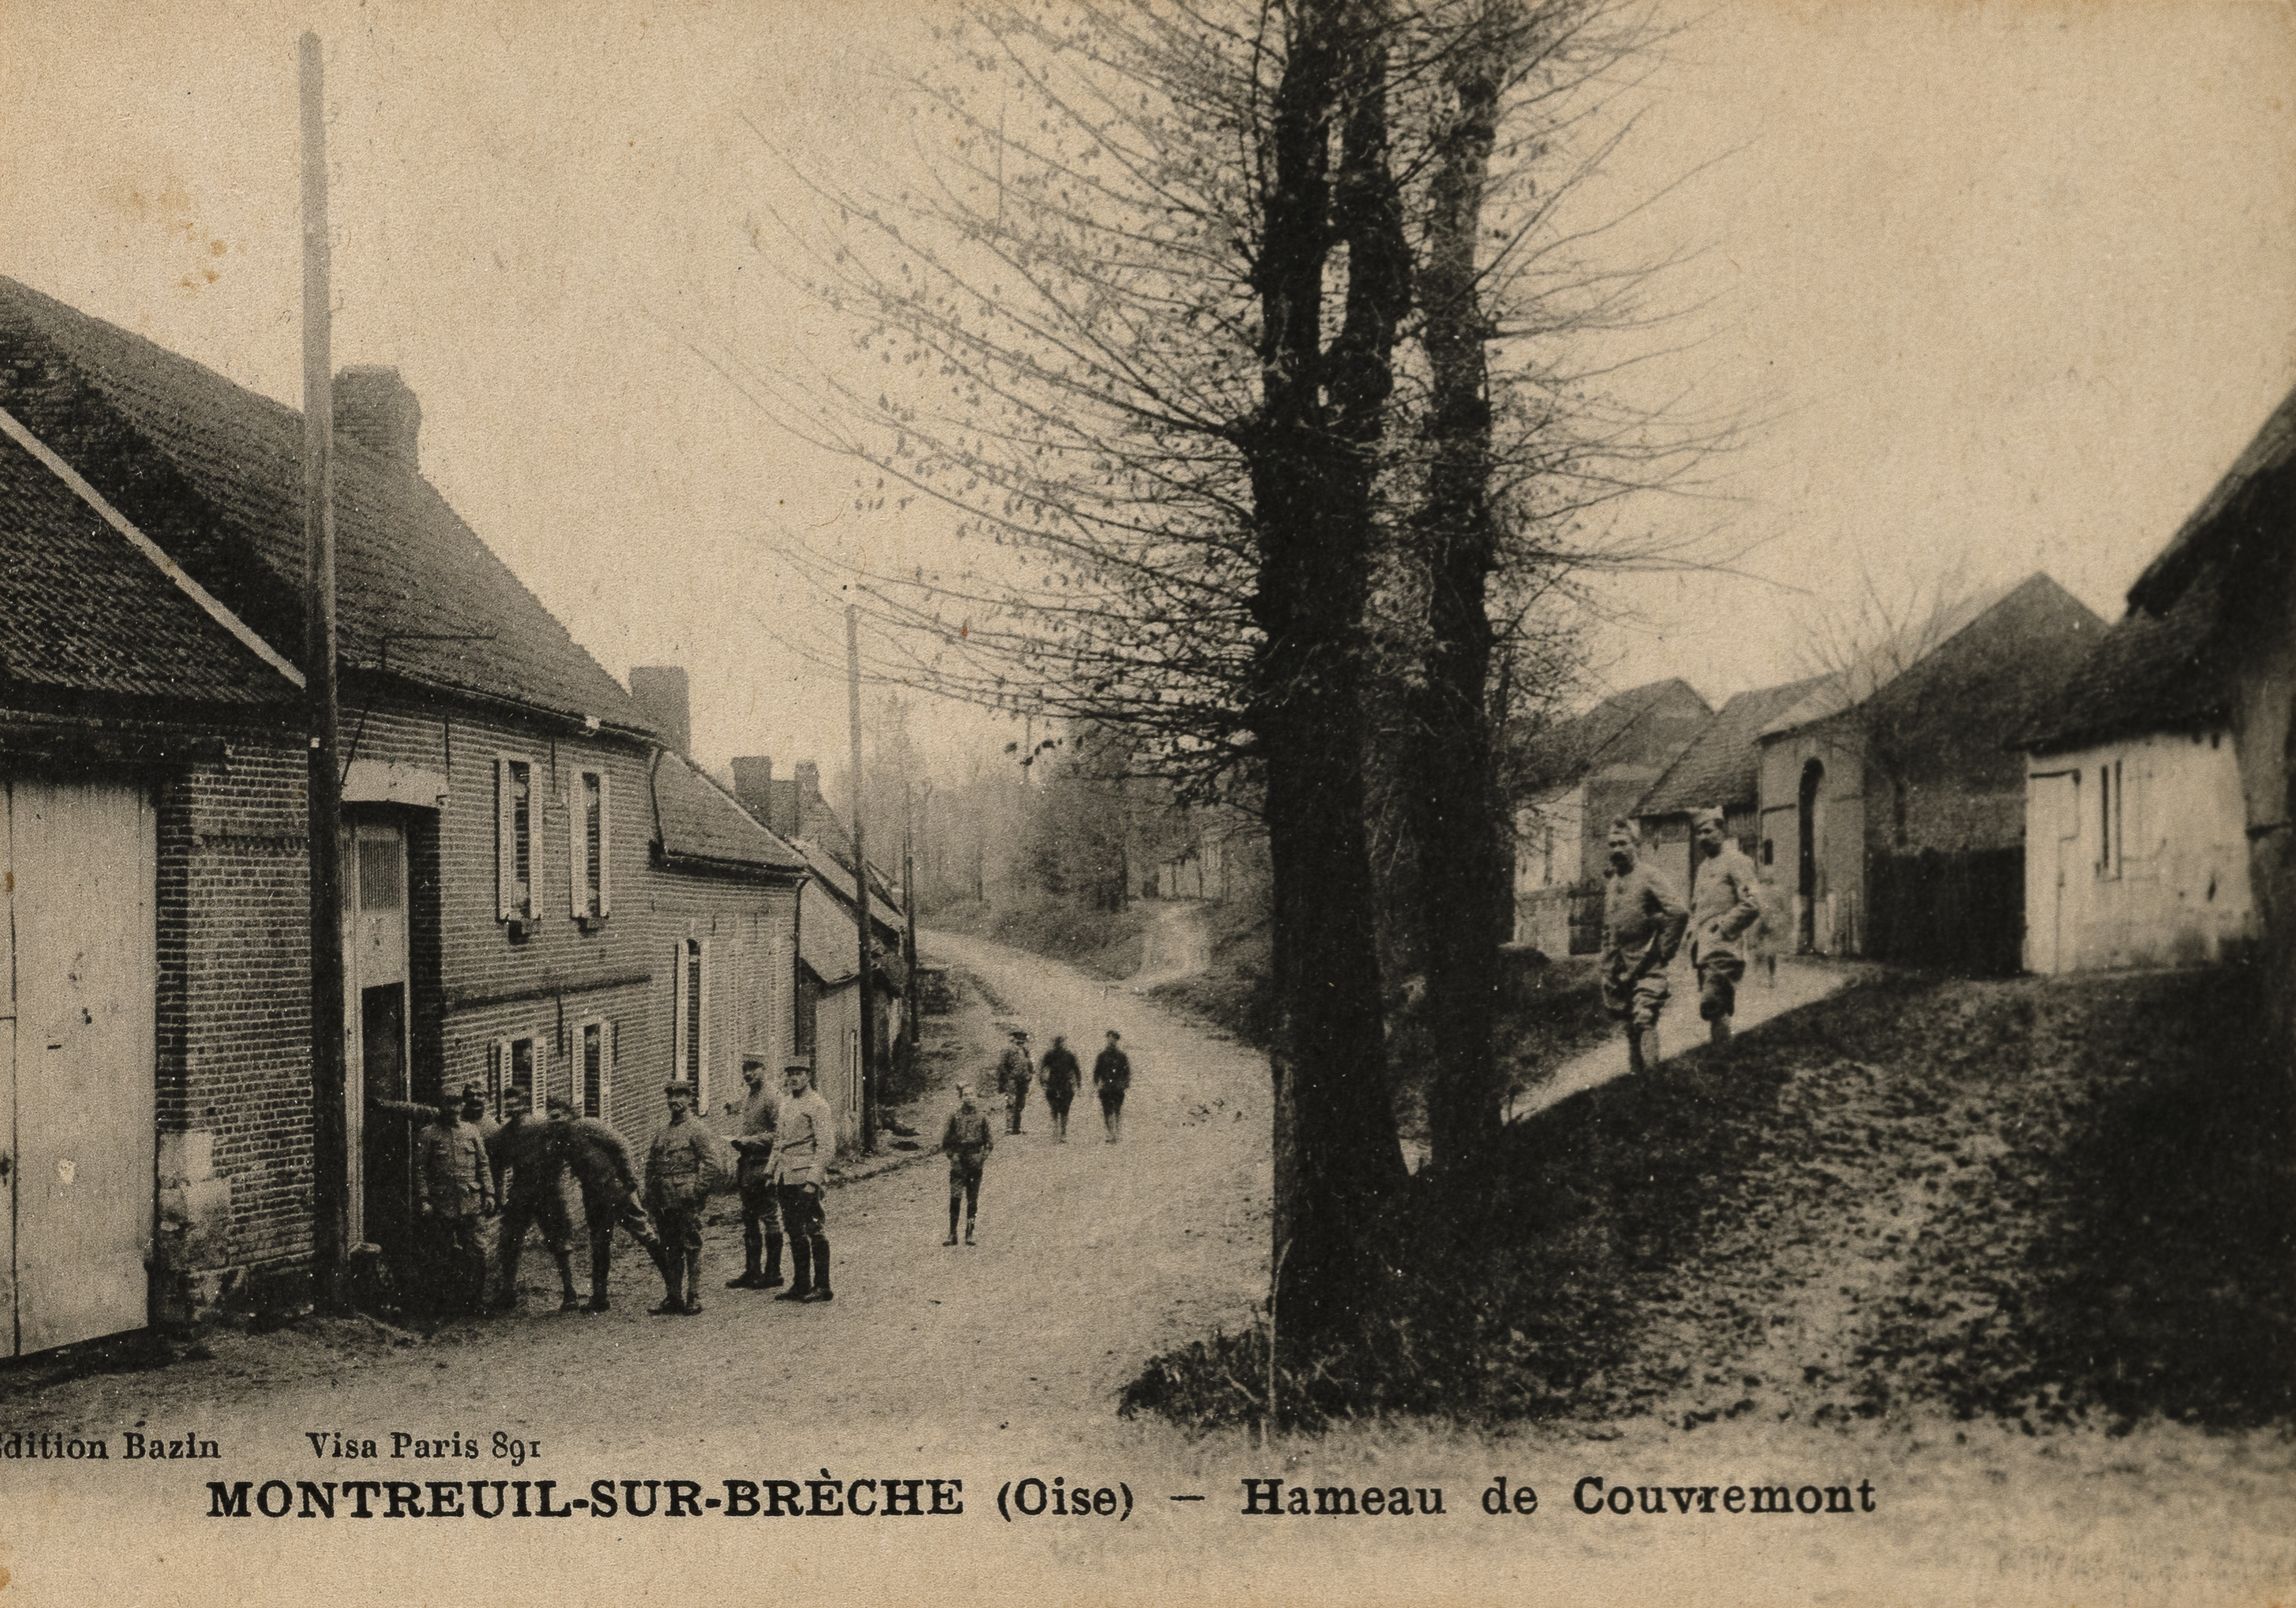 Le village de Montreuil-sur-Brêche